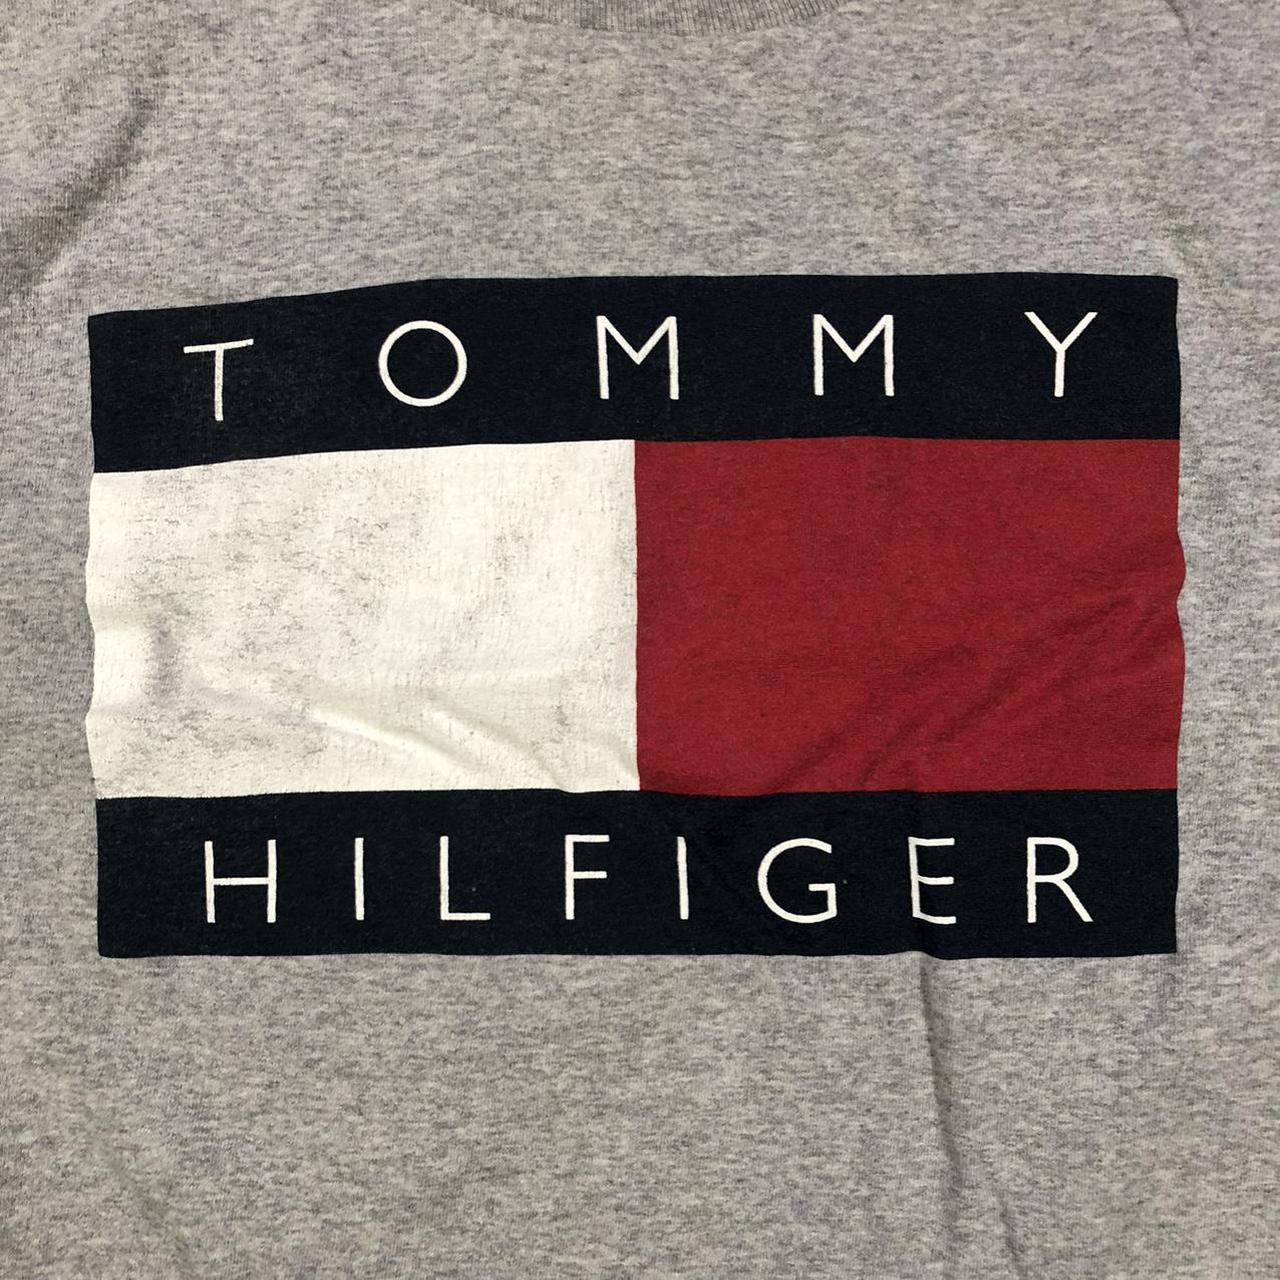 Vintage Tommy Hilfiger big flag shirt. Good... - Depop